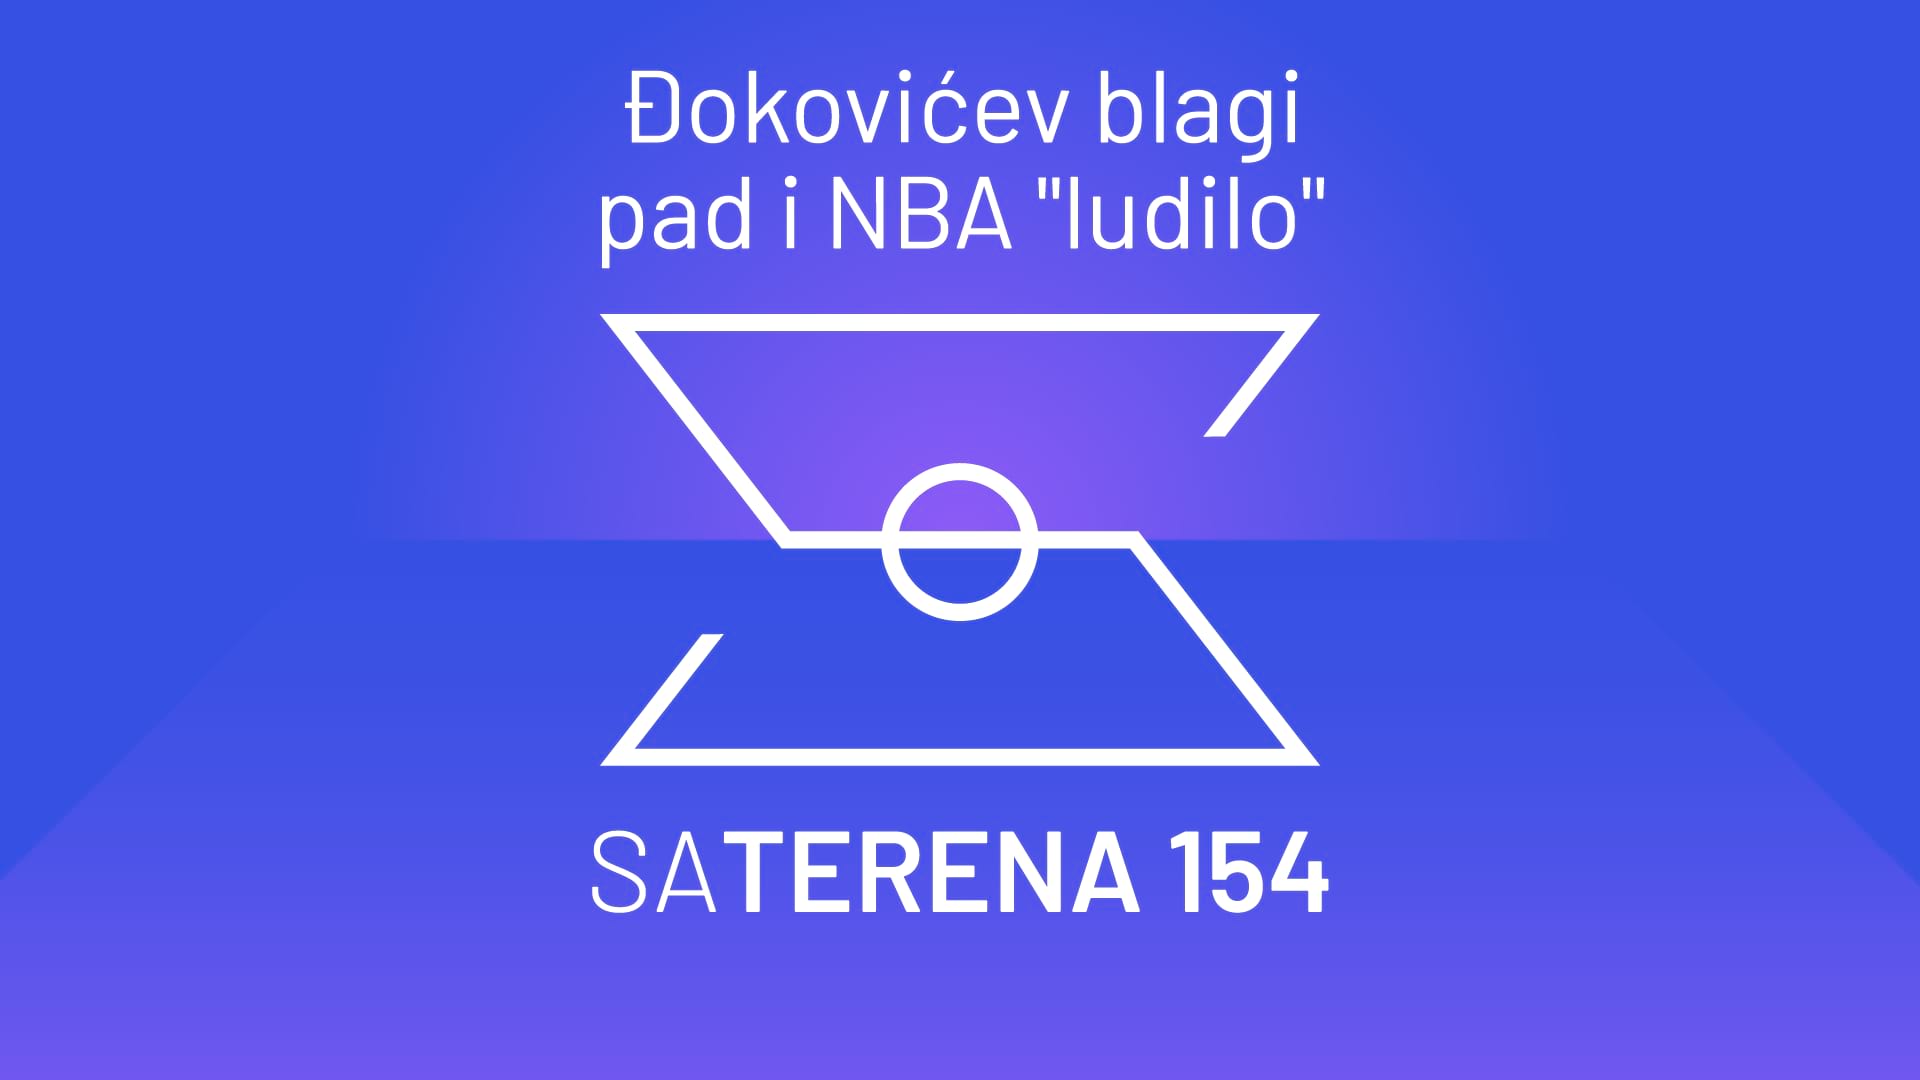 Sa terena 154: Đokovićev blagi pad i NBA 